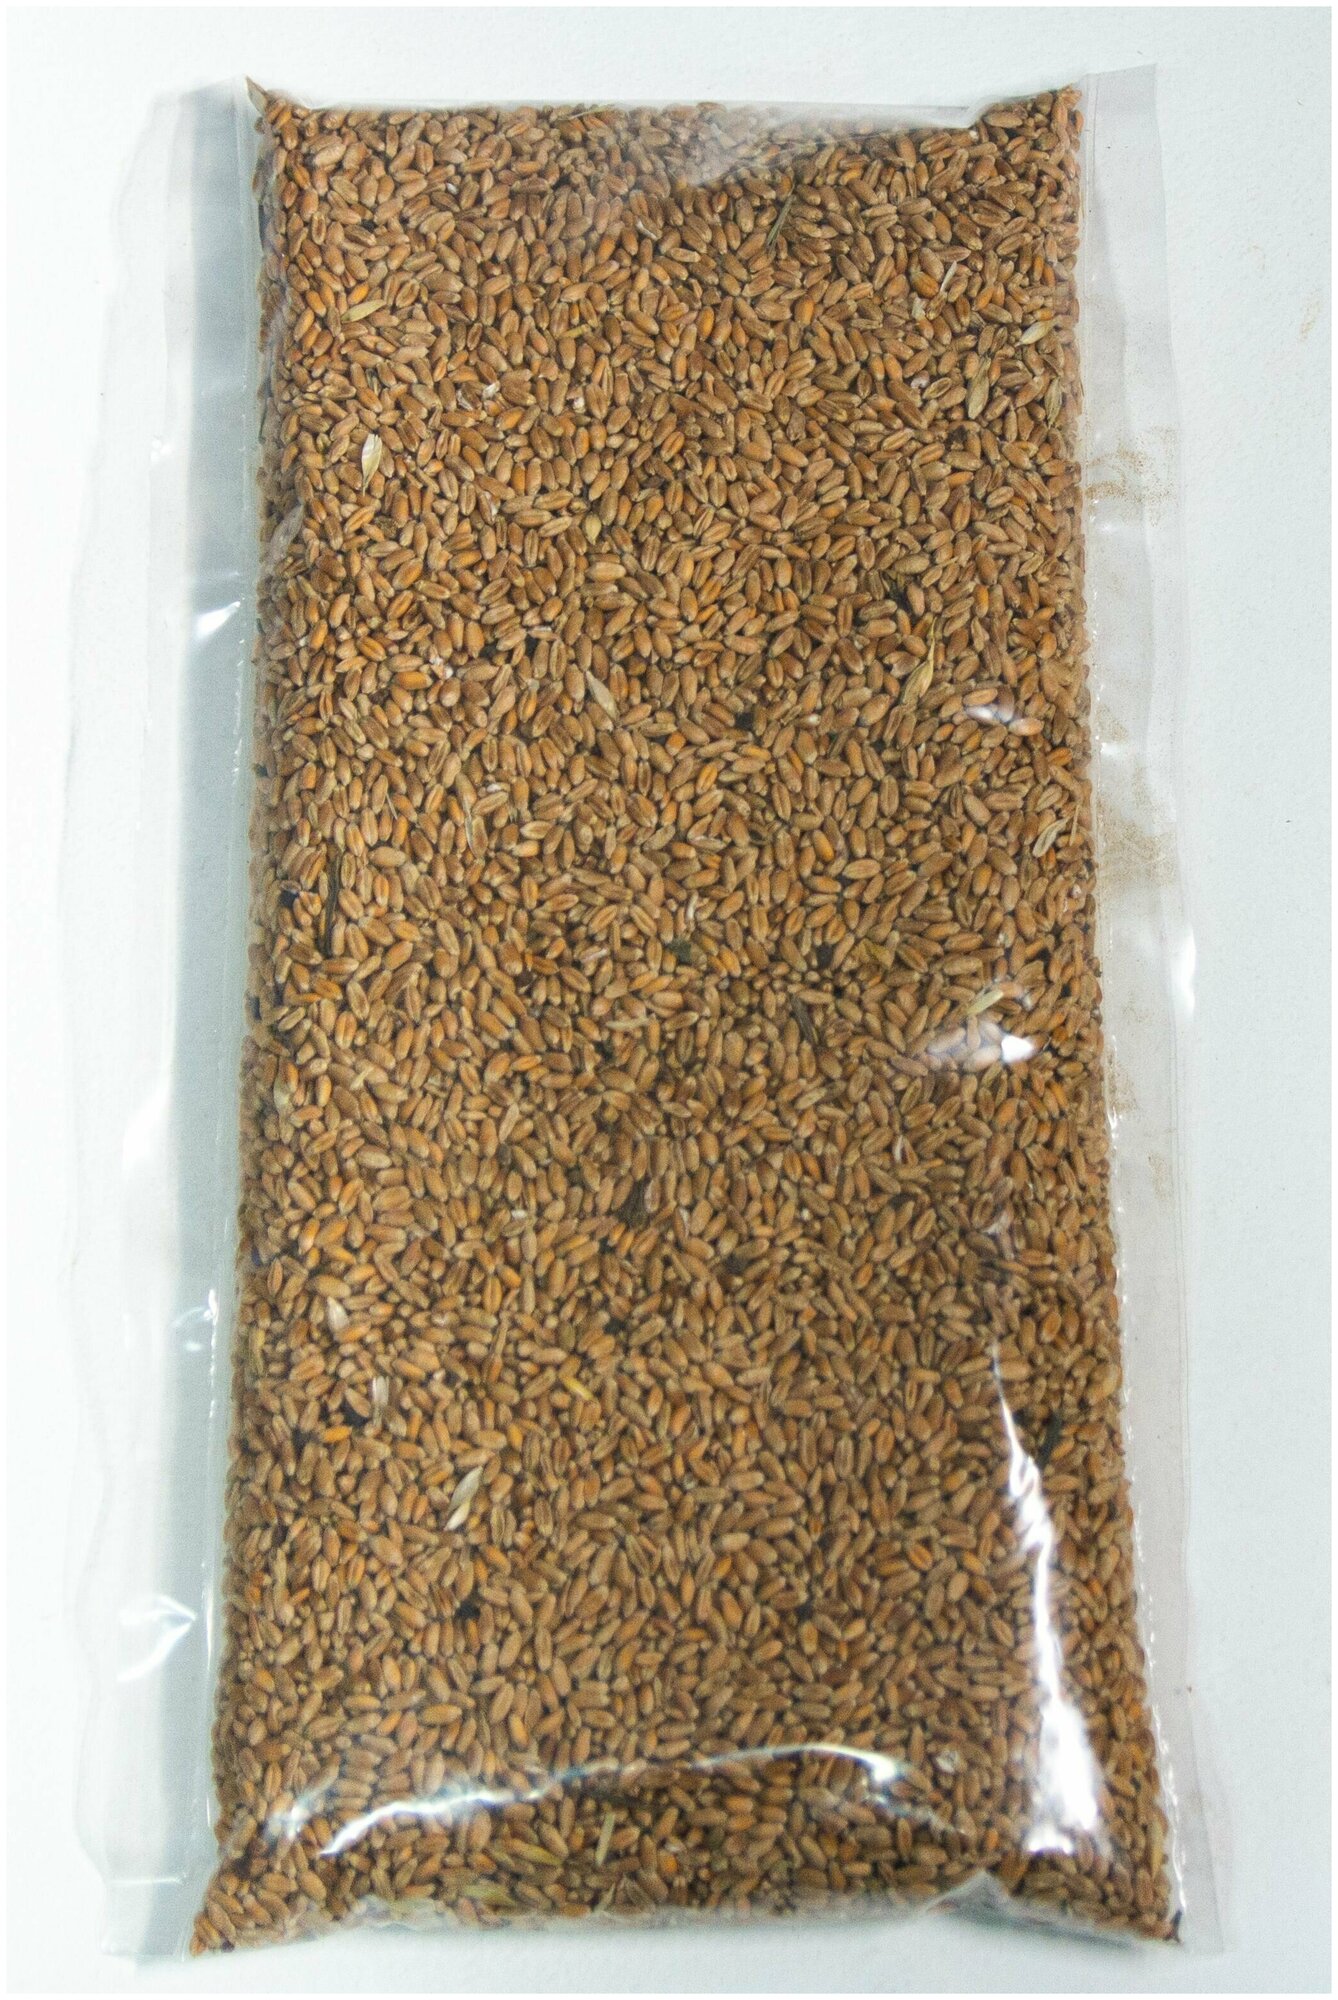 пшеница для птиц и грызунов, 2 кг